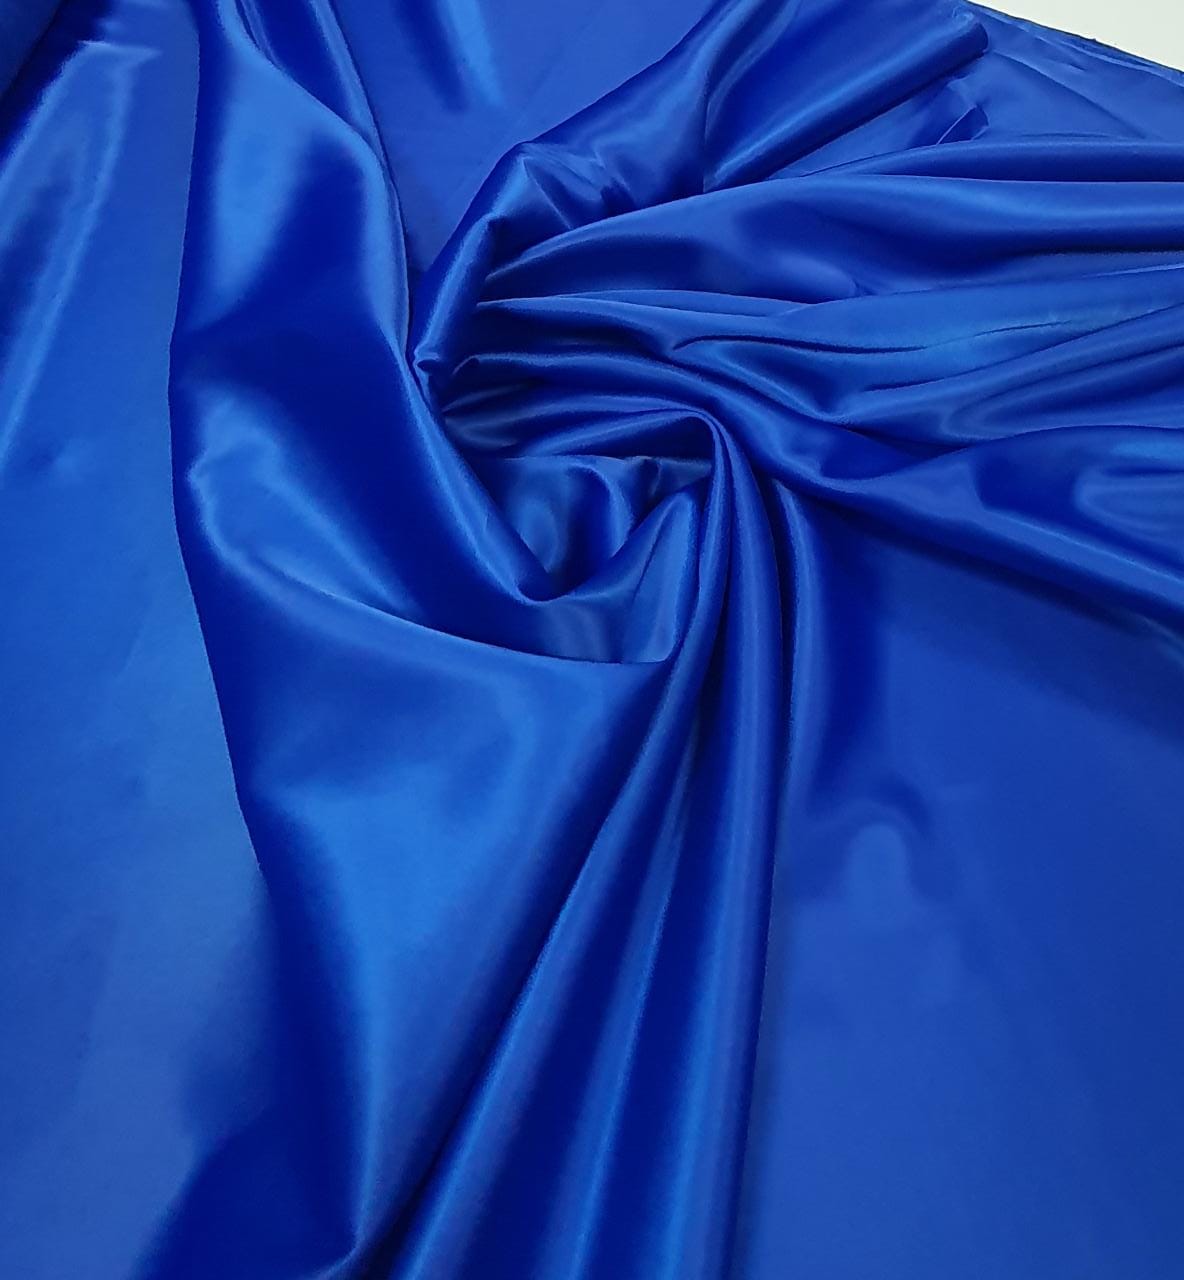 Cetim Bucol Liso Azul Royal